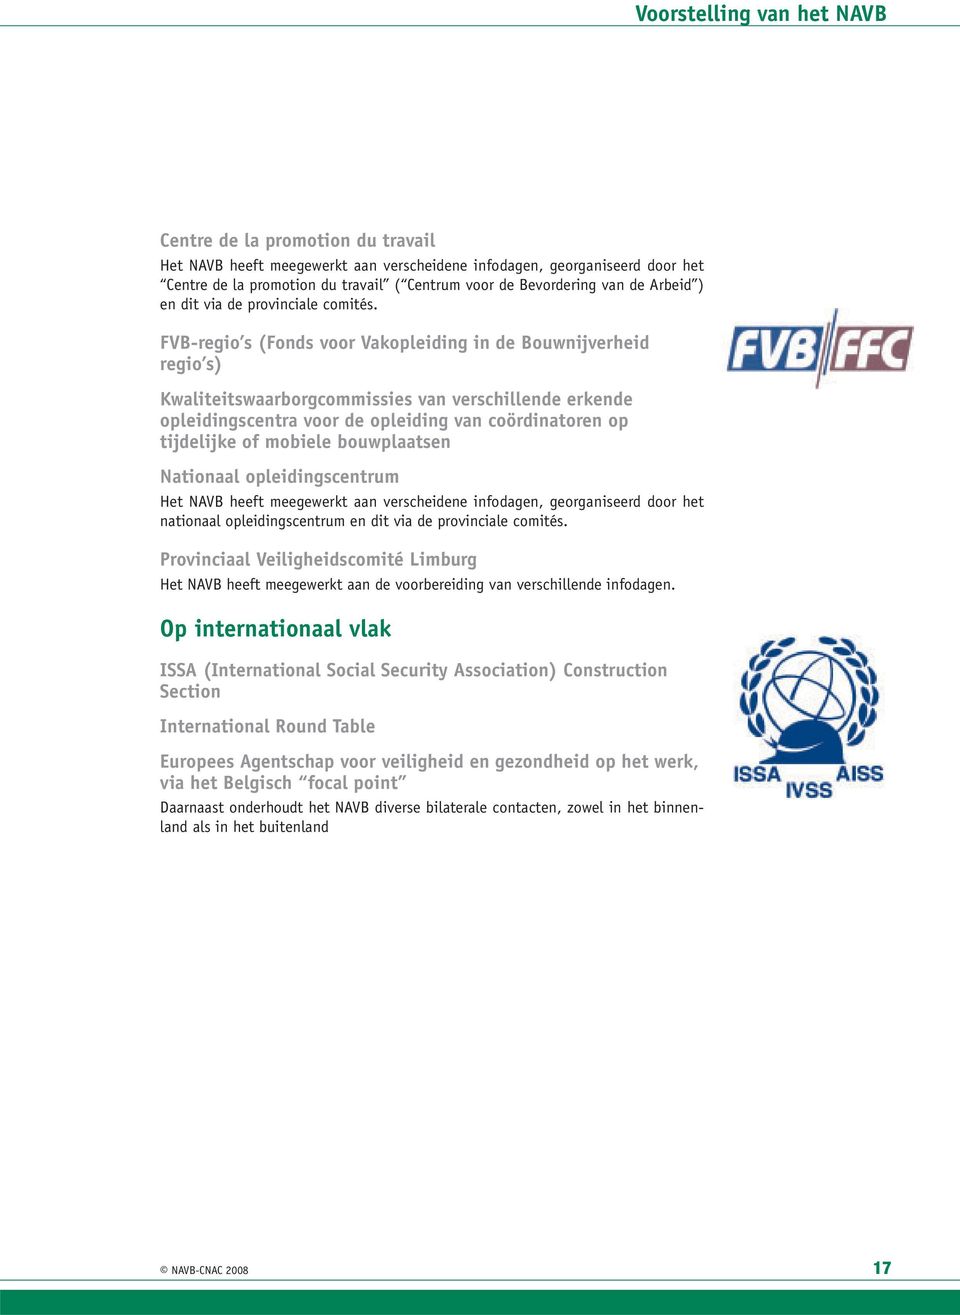 FVB-regio s (Fonds voor Vakopleiding in de Bouwnijverheid regio s) Kwaliteitswaarborgcommissies van verschillende erkende opleidingscentra voor de opleiding van coördinatoren op tijdelijke of mobiele